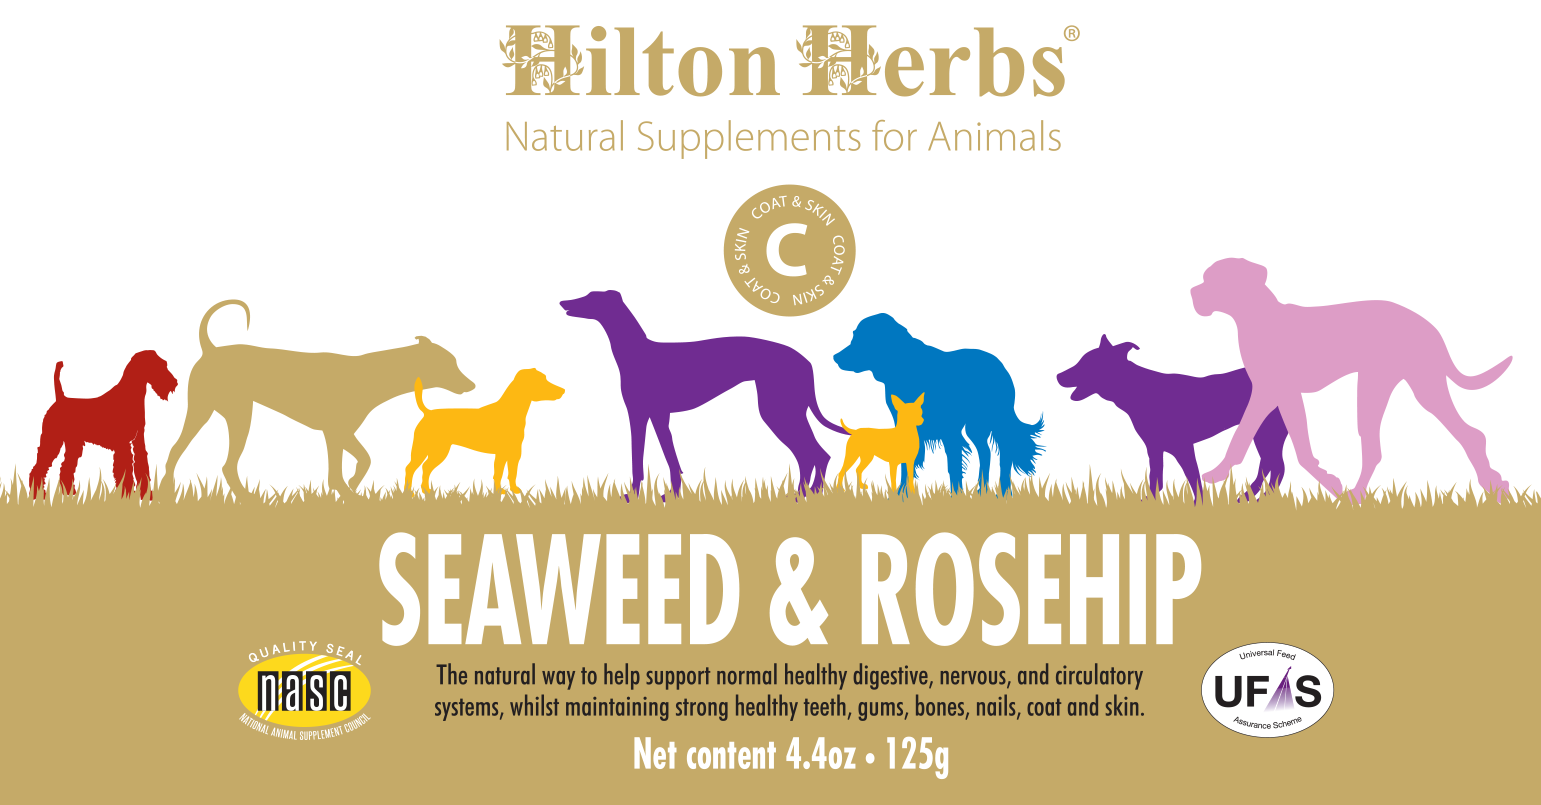 Seaweed & Rosehip image